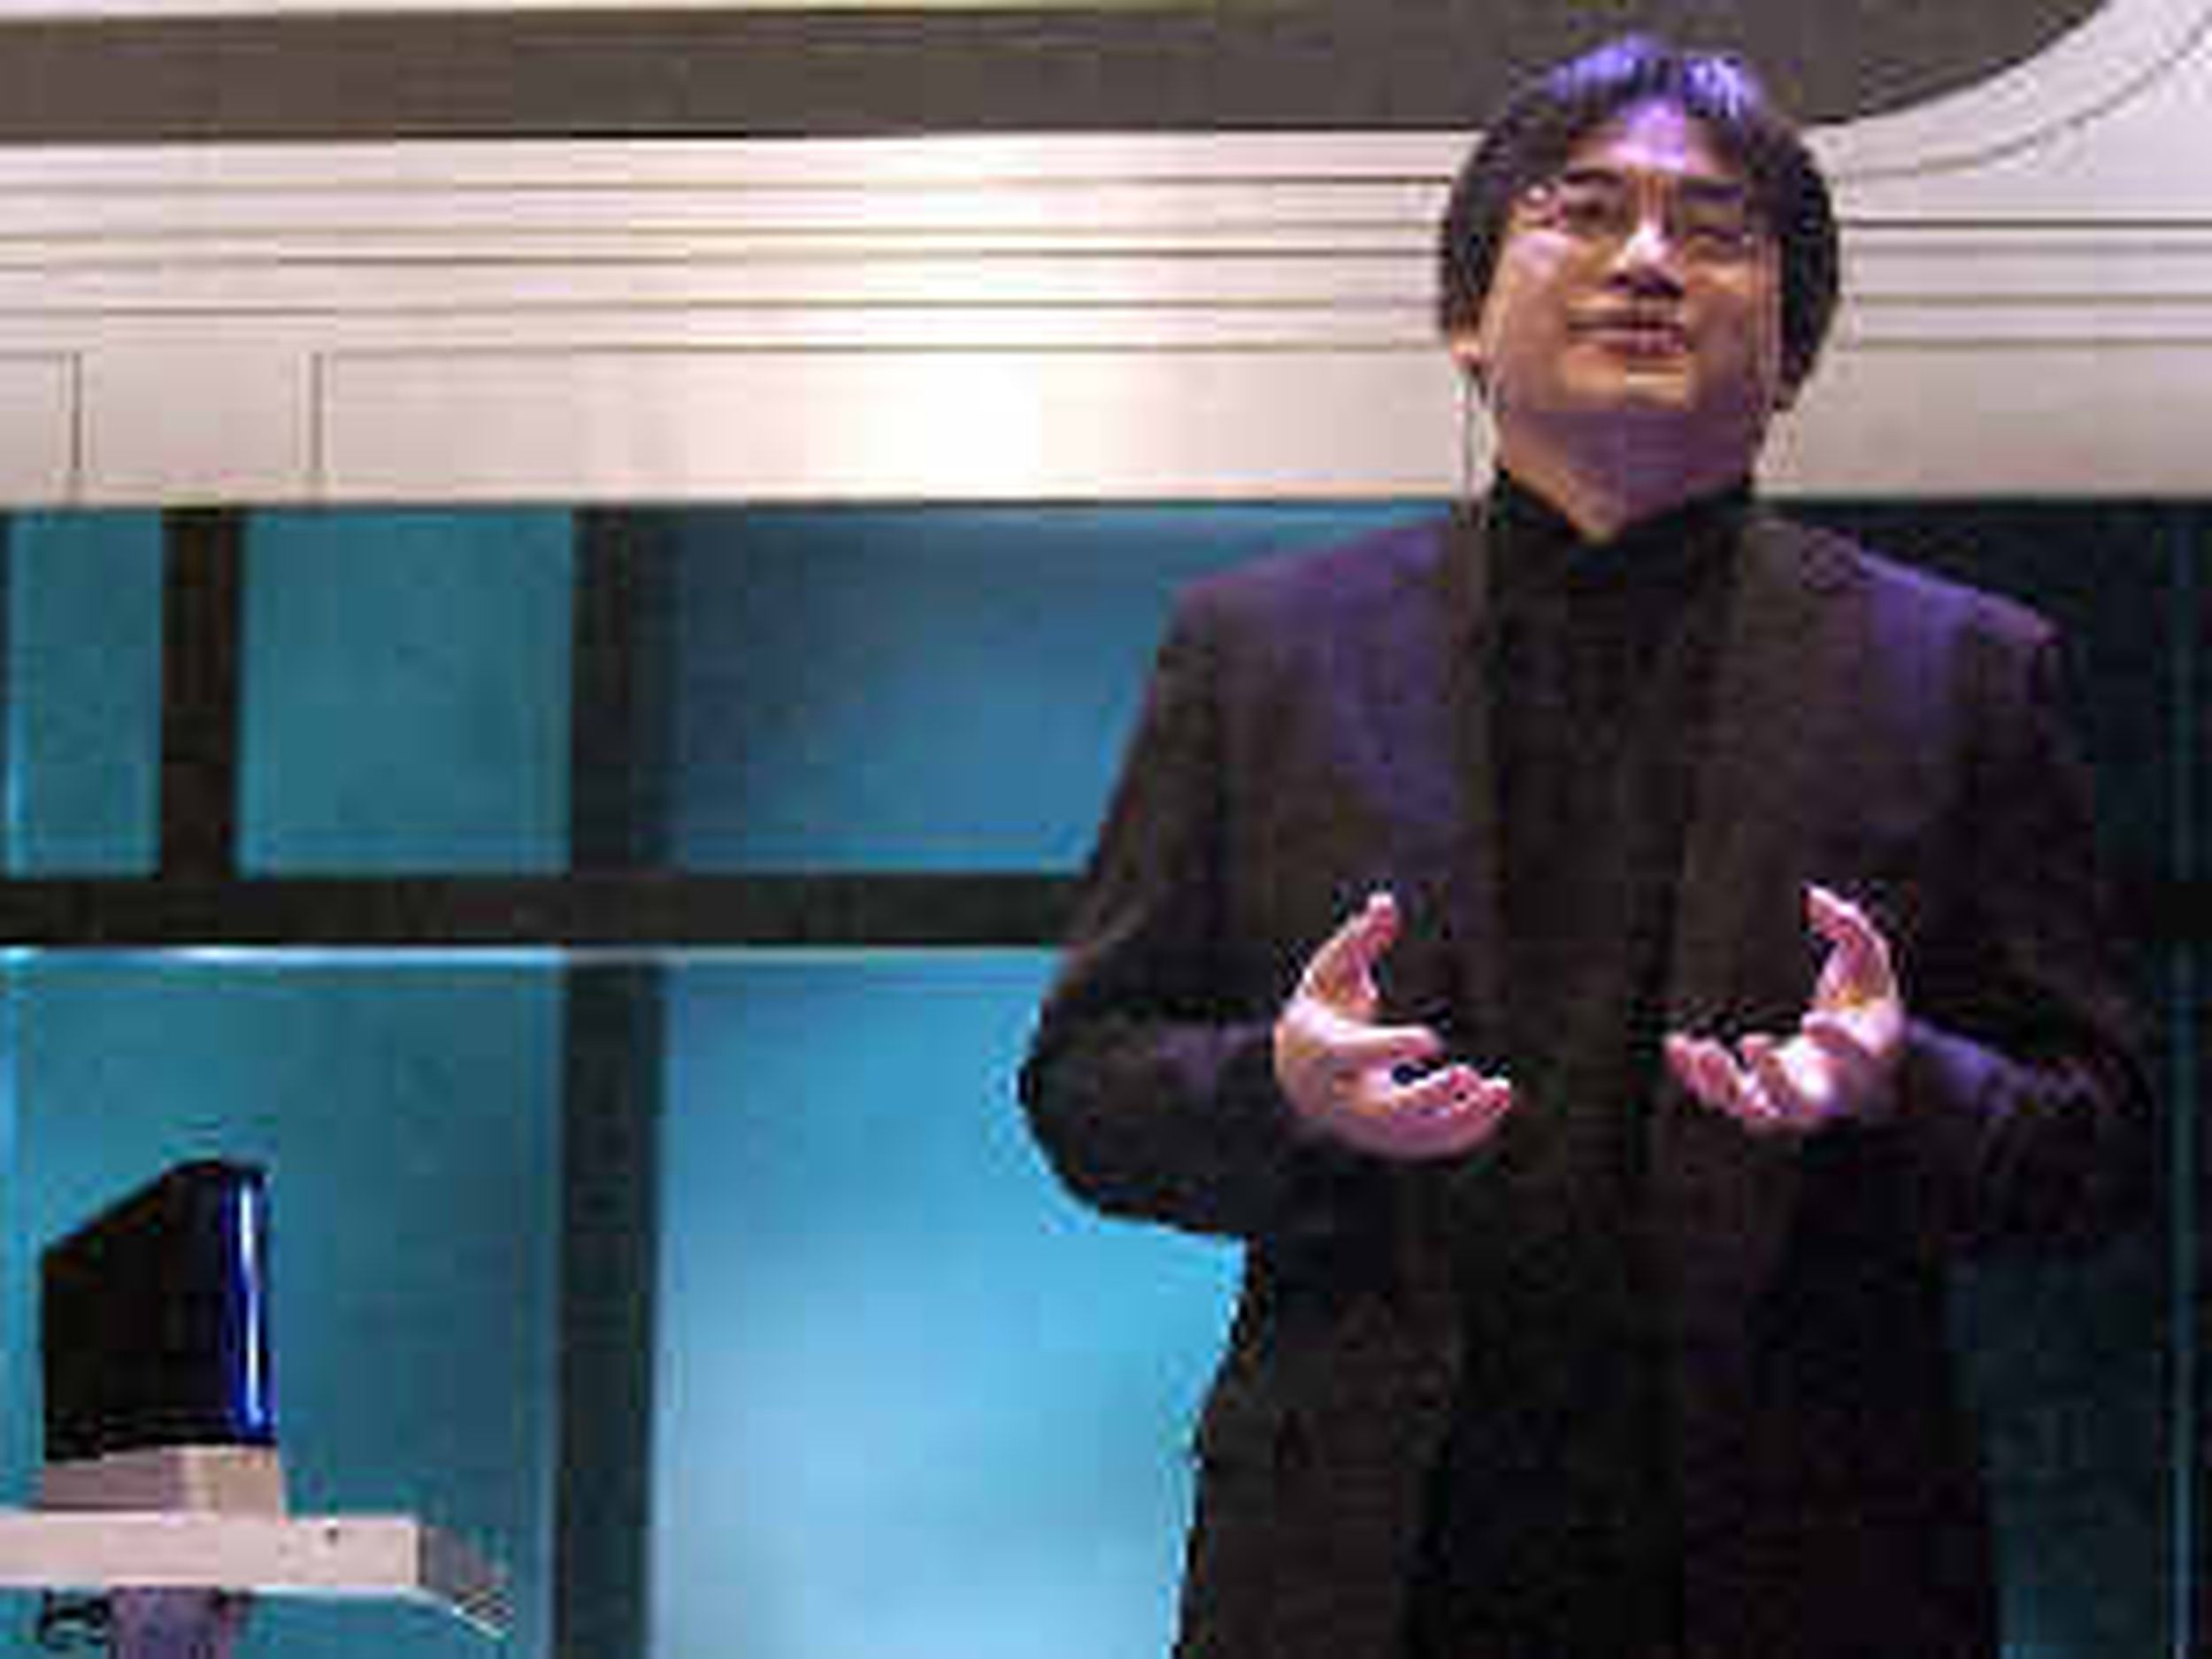 Obituary: Satoru Iwata